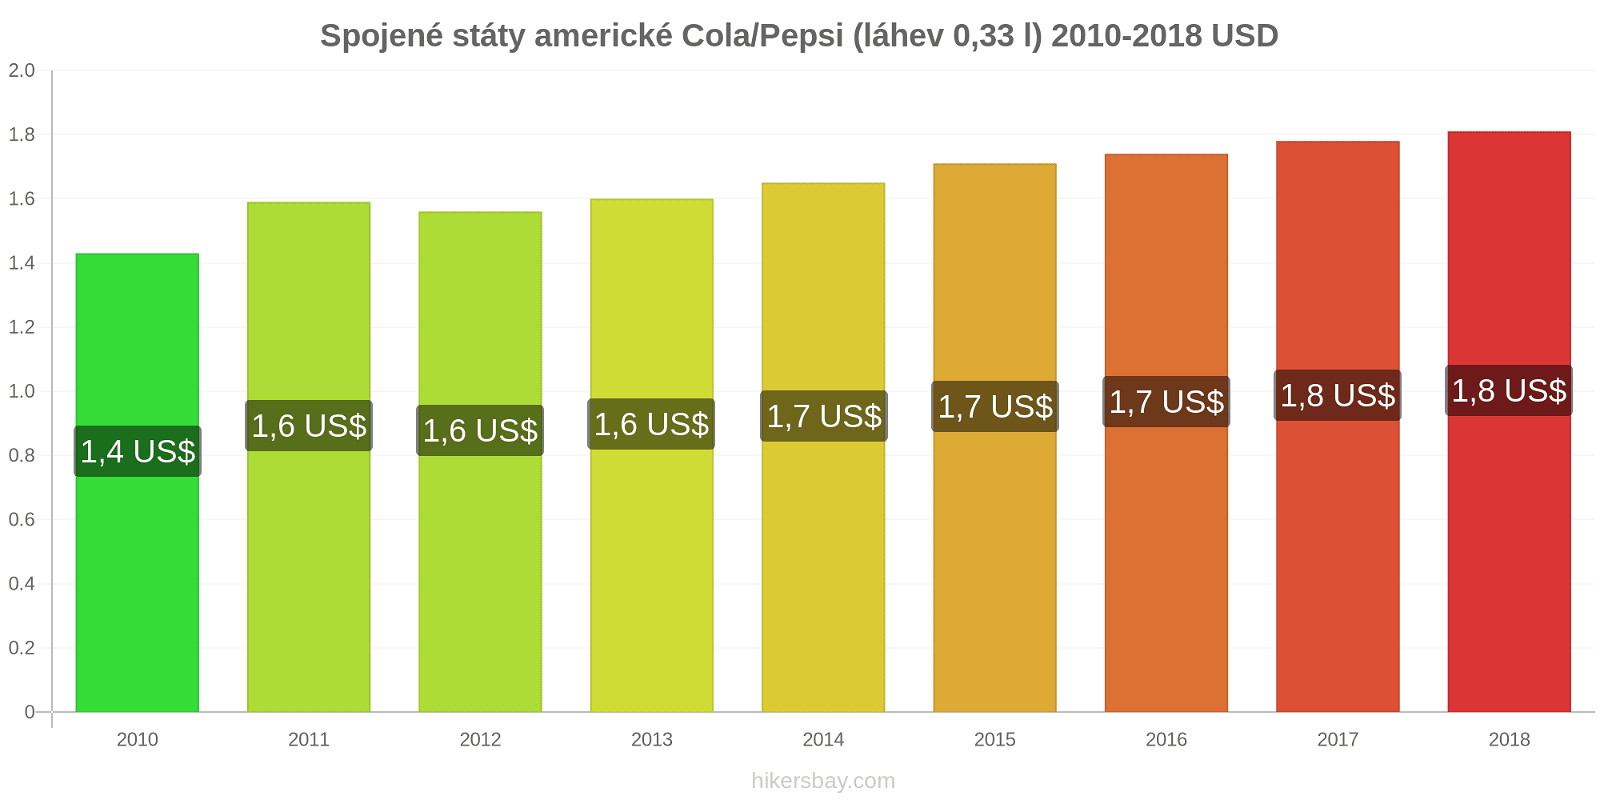 Spojené státy americké změny cen Coca-Cola/Pepsi (láhev 0.33 l) hikersbay.com